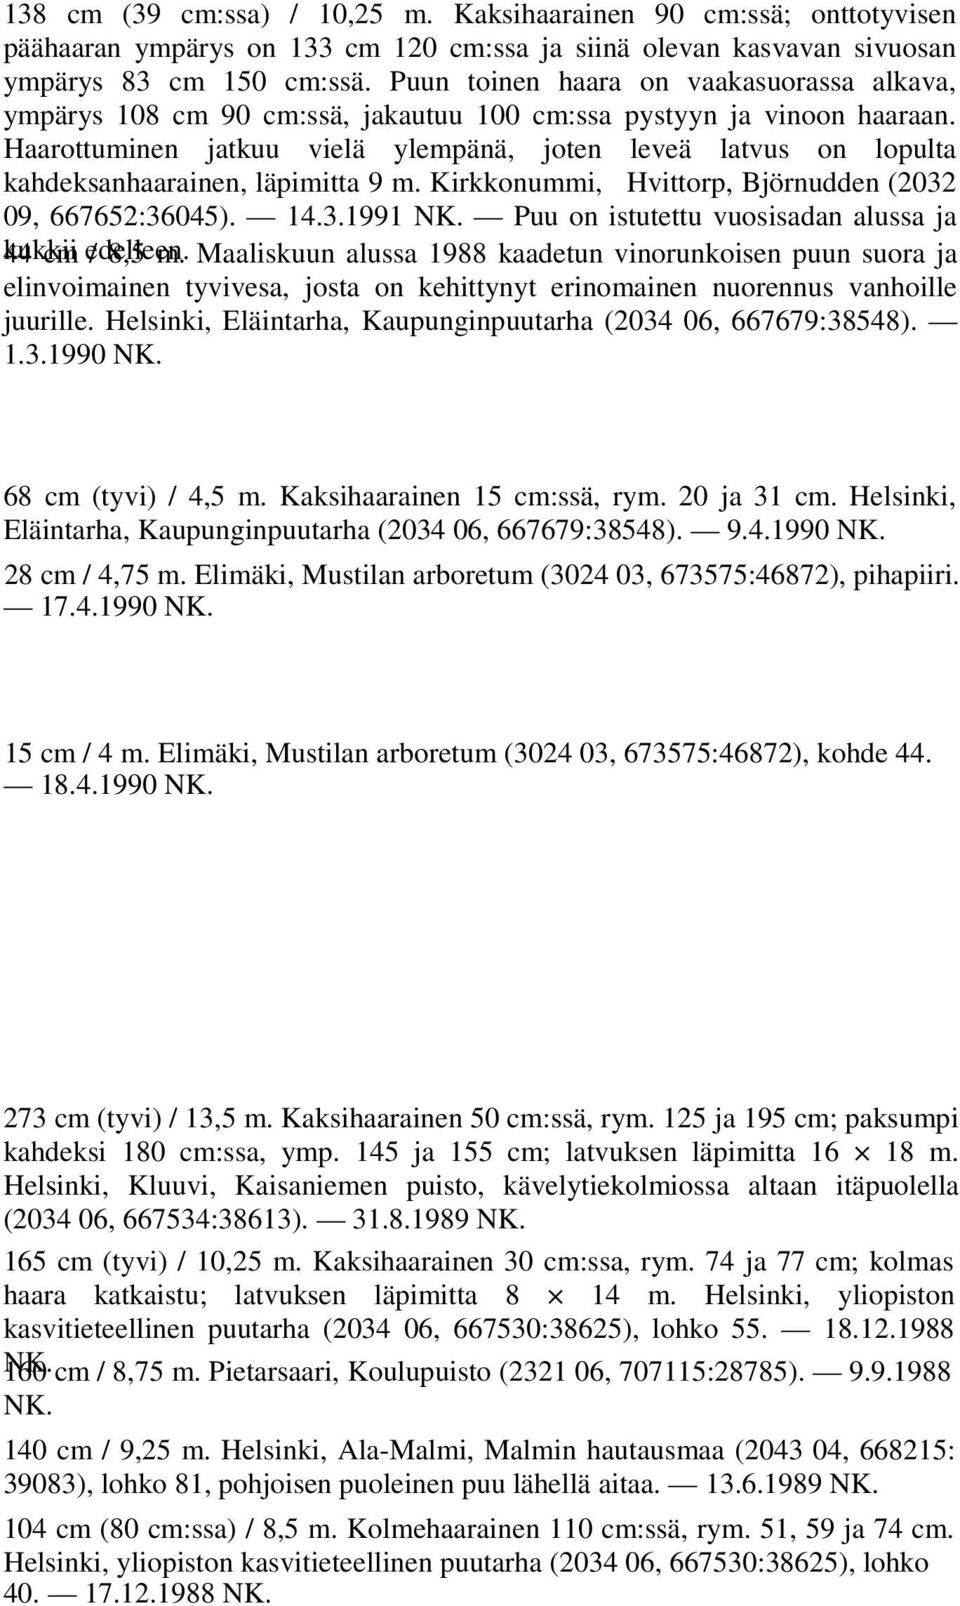 Haarottuminen jatkuu vielä ylempänä, joten leveä latvus on lopulta kahdeksanhaarainen, läpimitta 9 m. Kirkkonummi, Hvittorp, Björnudden (2032 09, 667652:36045). 14.3.1991 NK.